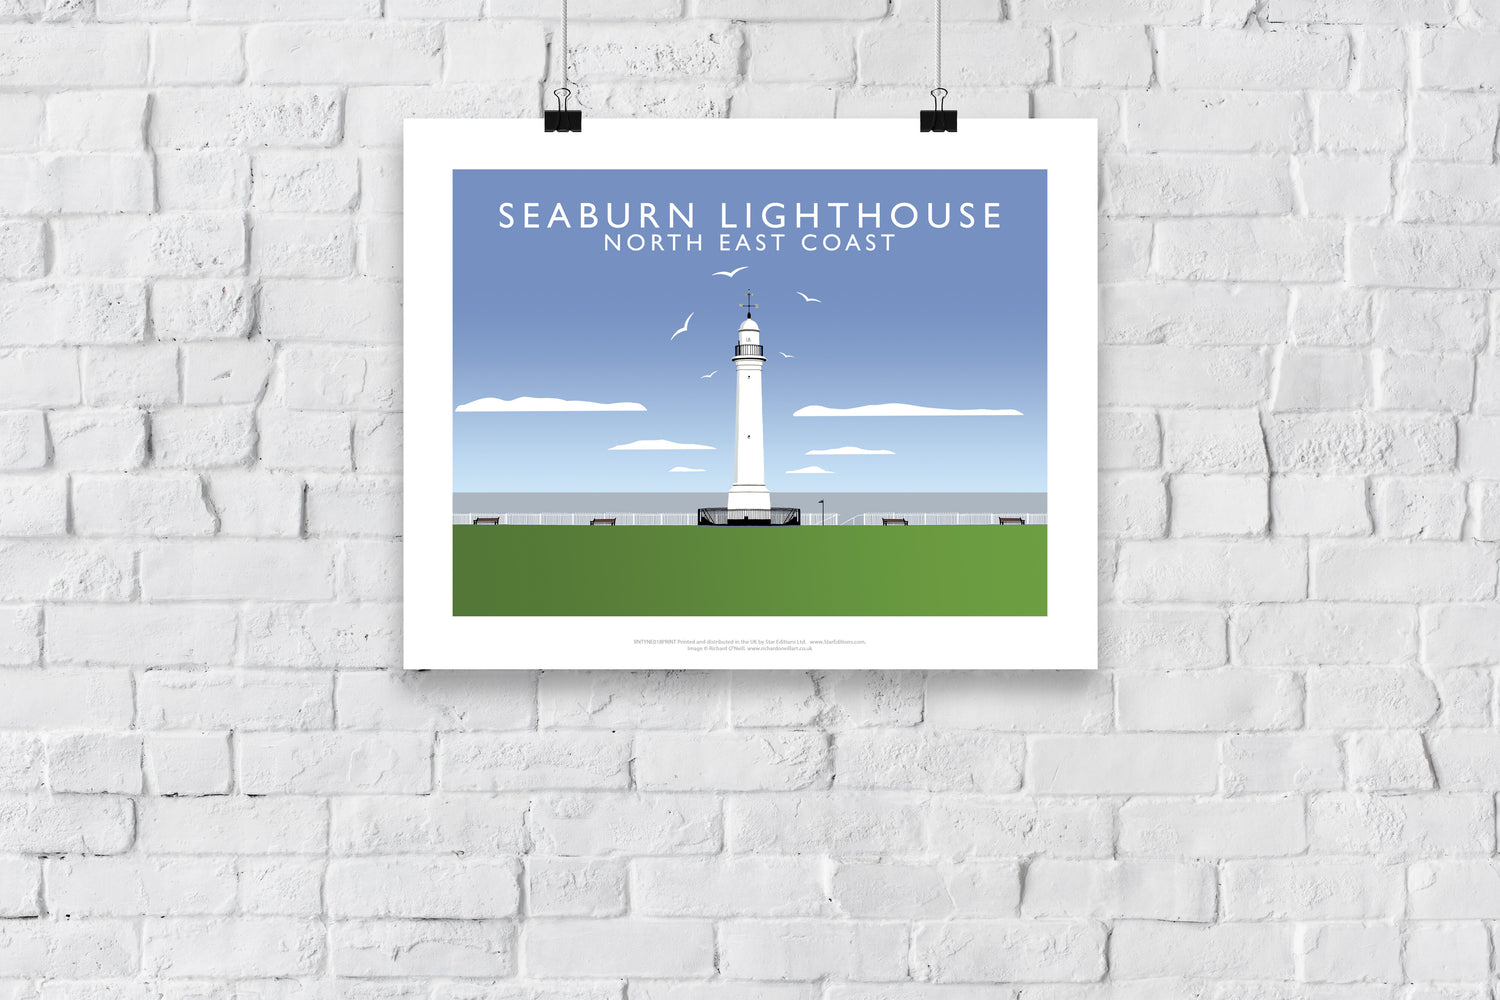 Seaburn Lighthouse, North East Coast - Art Print